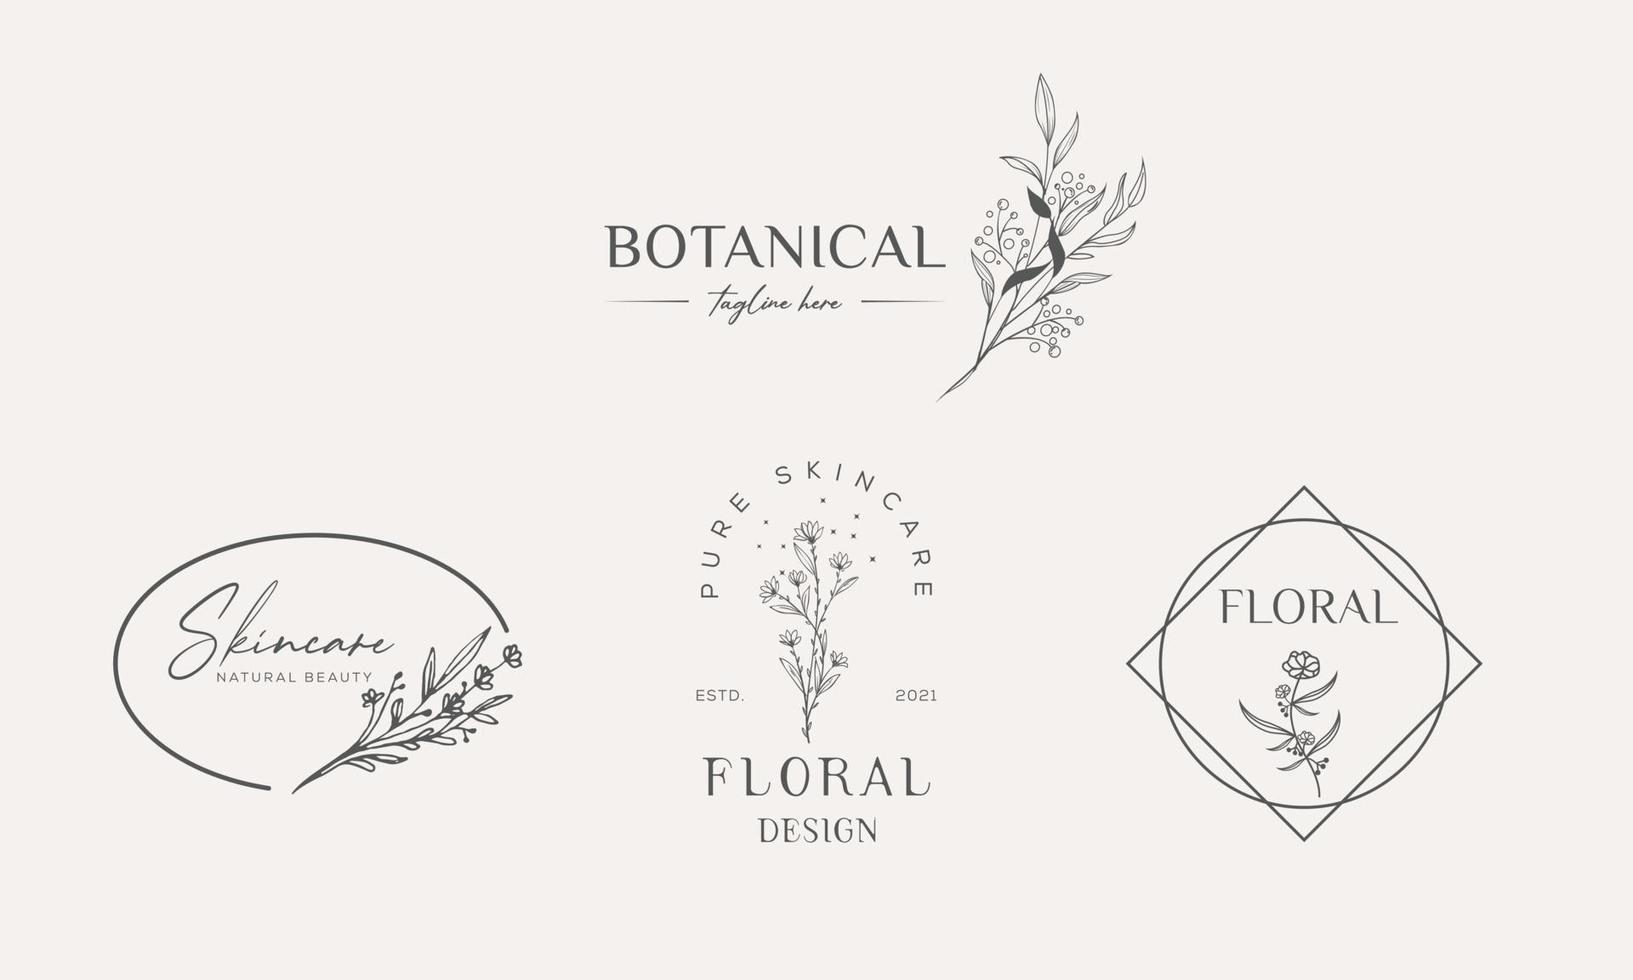 vecteur d'élément floral botanique logo tendance dessiné à la main avec des fleurs et des feuilles sauvages. logo pour spa et salon de beauté, boutique, magasin bio, mariage, designer floral, intérieur, photographie, cosmétique.